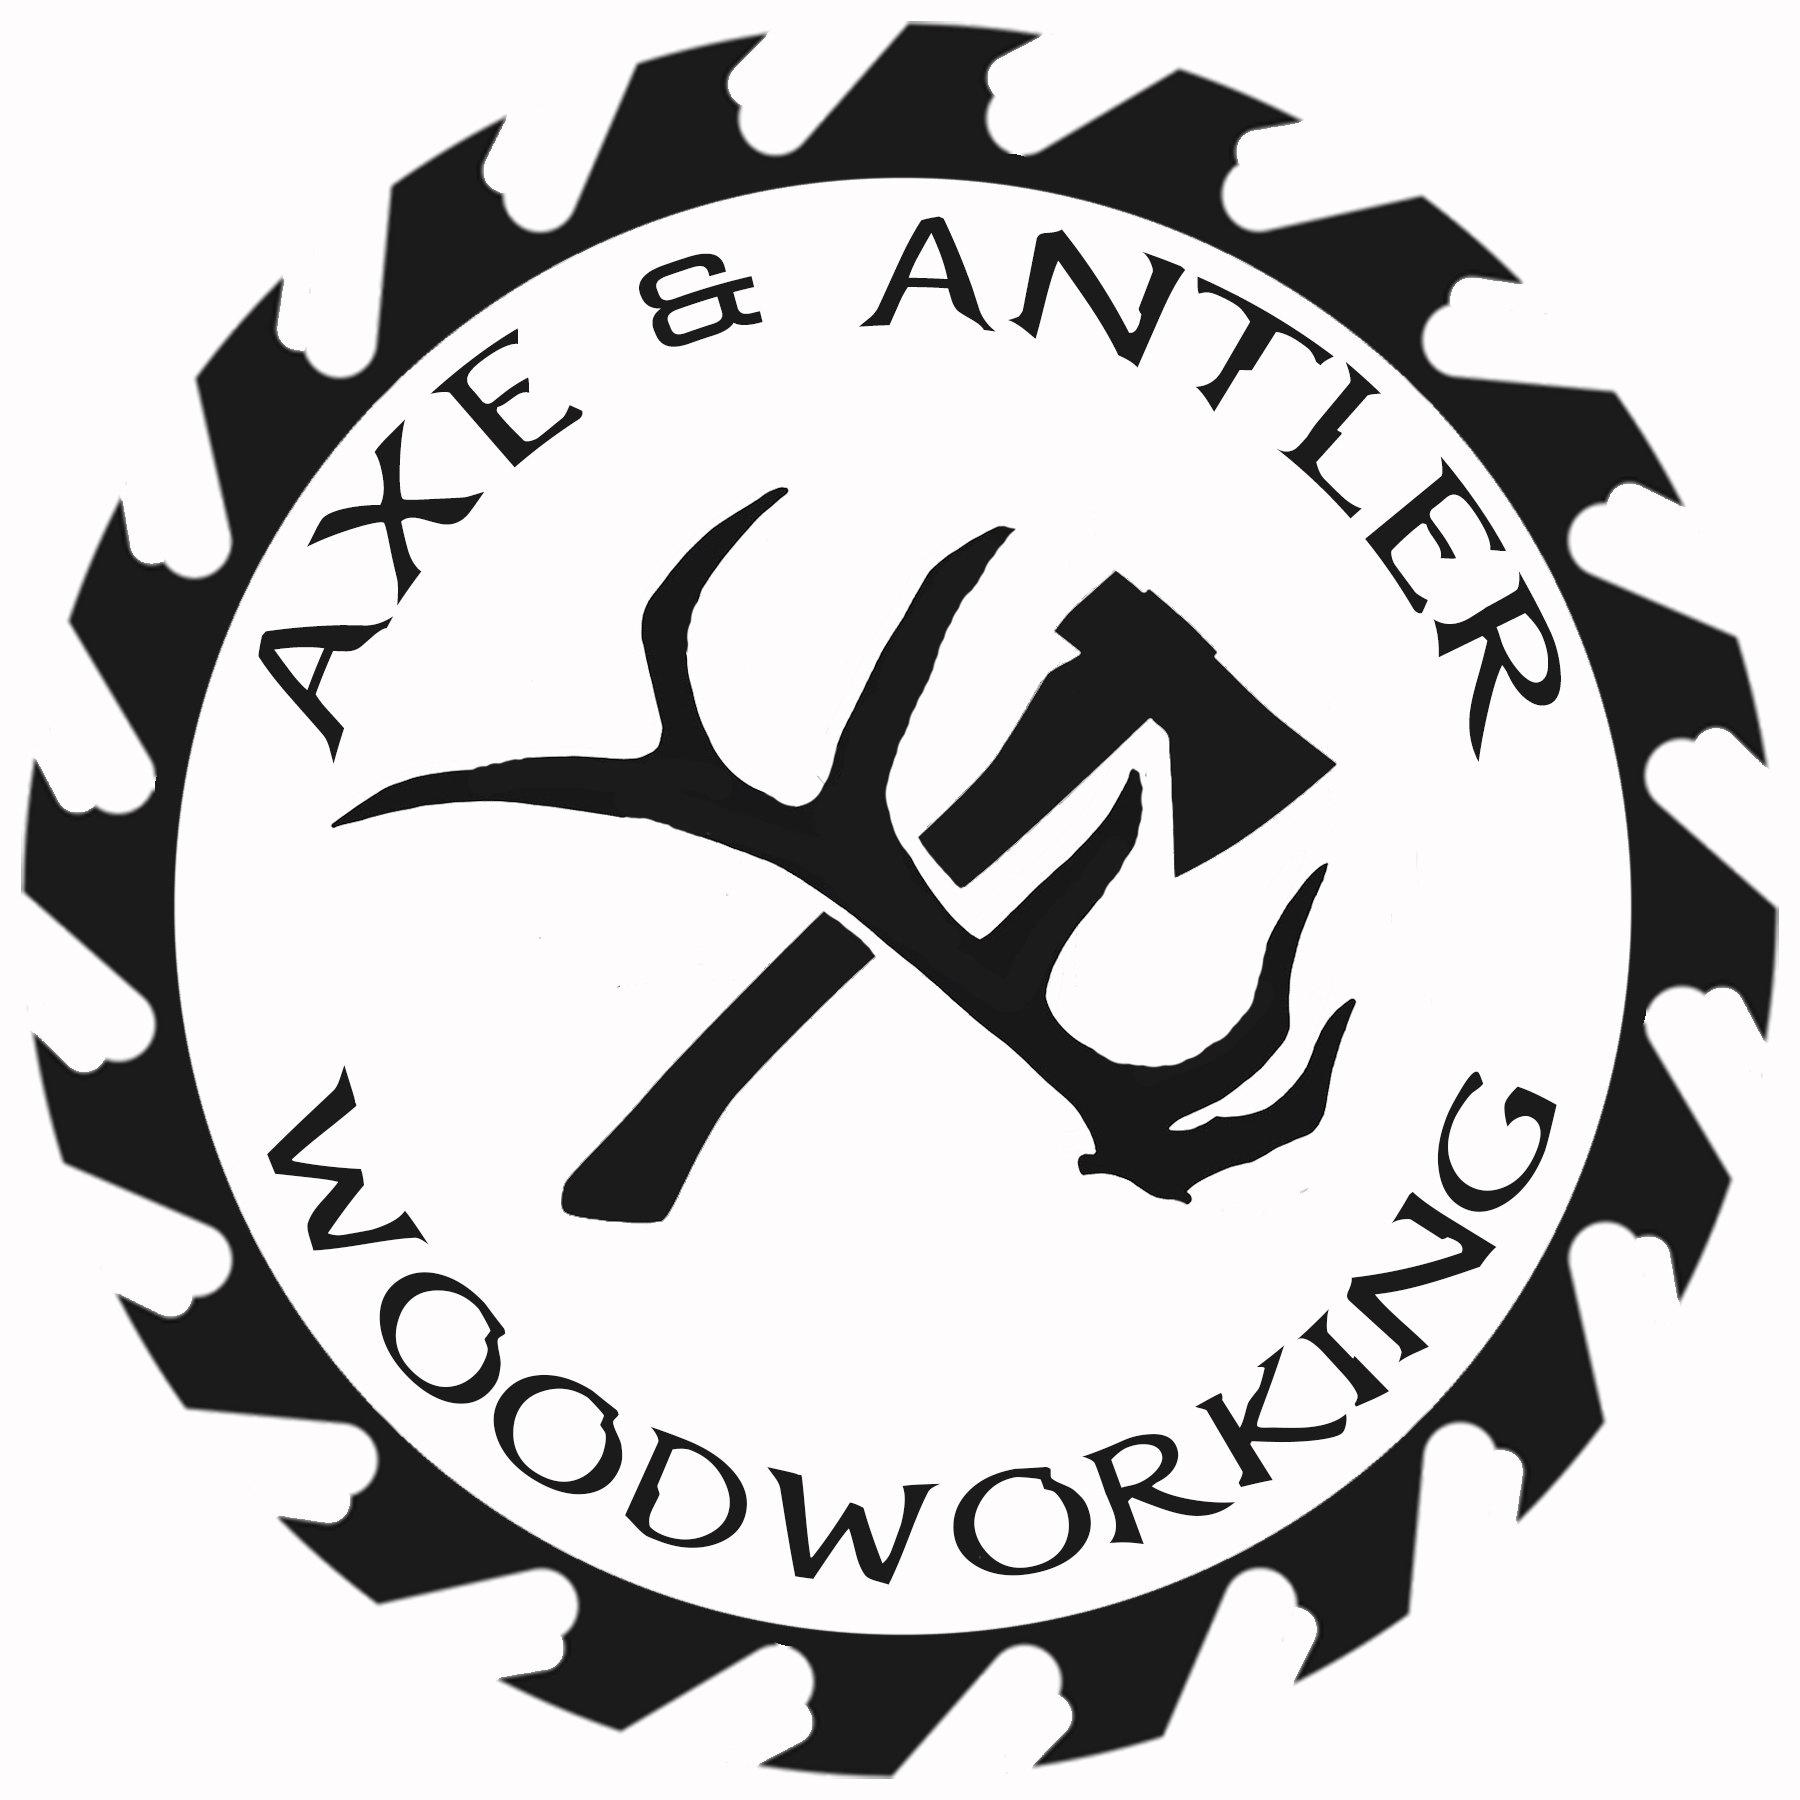  AXE &amp; ANTLER WOODWORKING